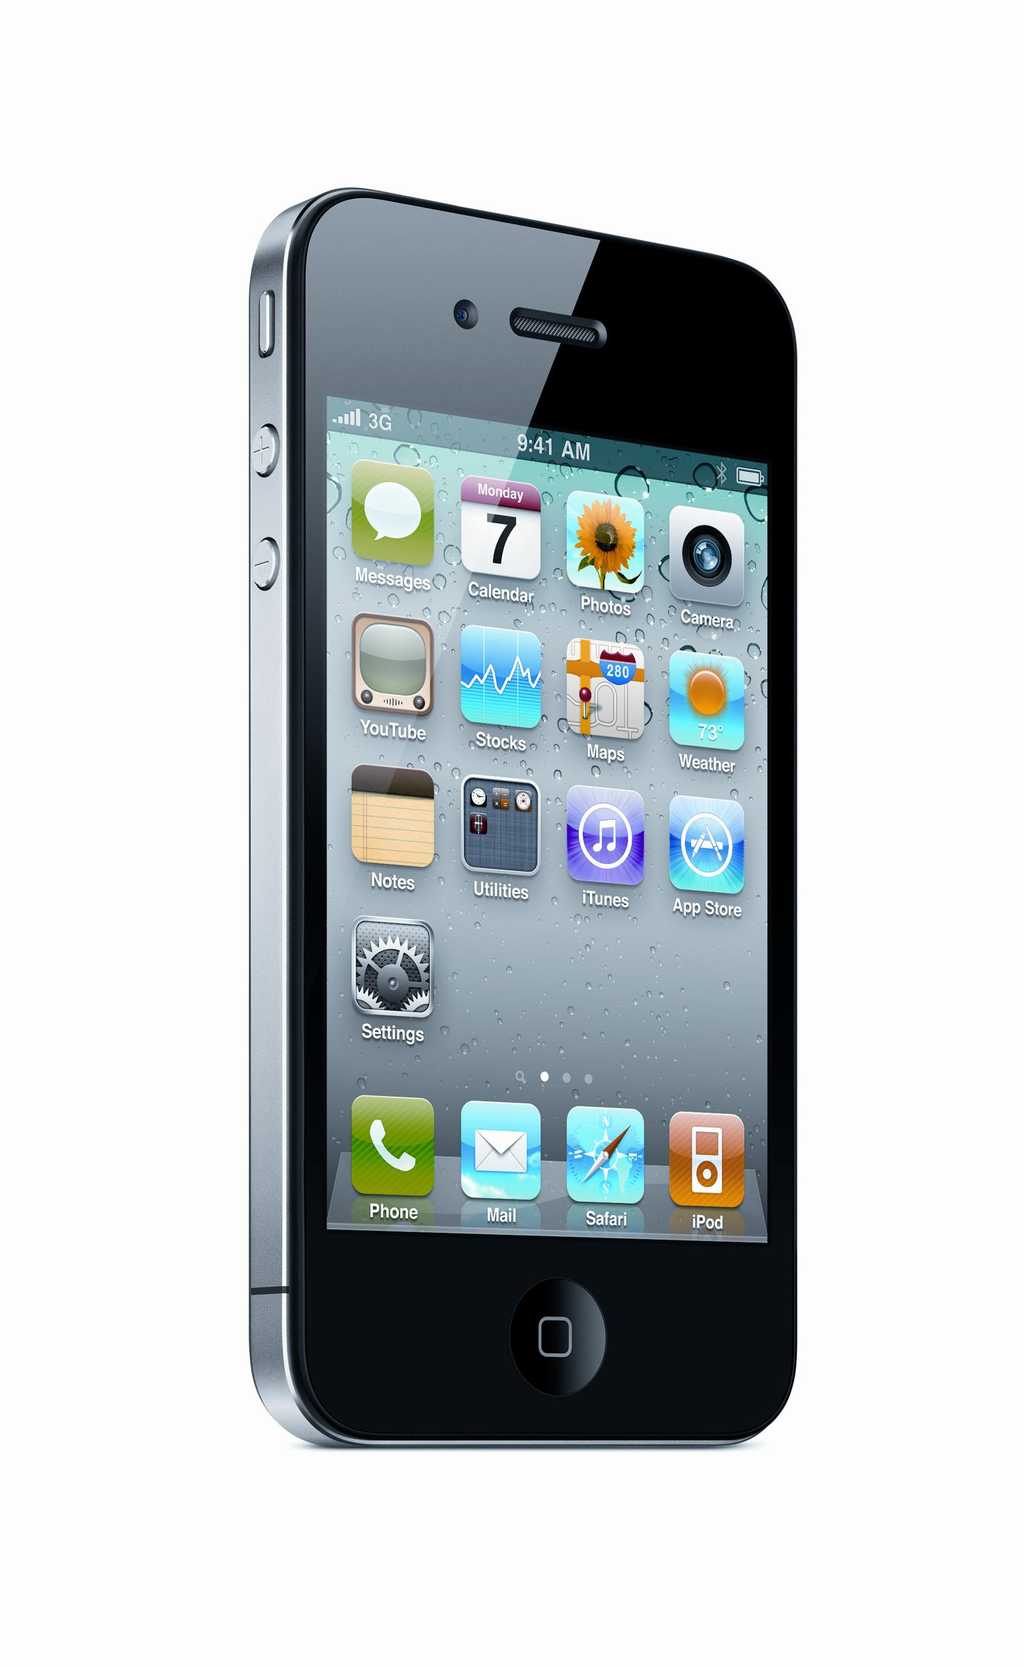 Le système d'exploitation de l'iPhone 4 est multitâche et l'appareil permet d'acheter des livres électroniques dans la boutique en ligne de Apple. © Apple